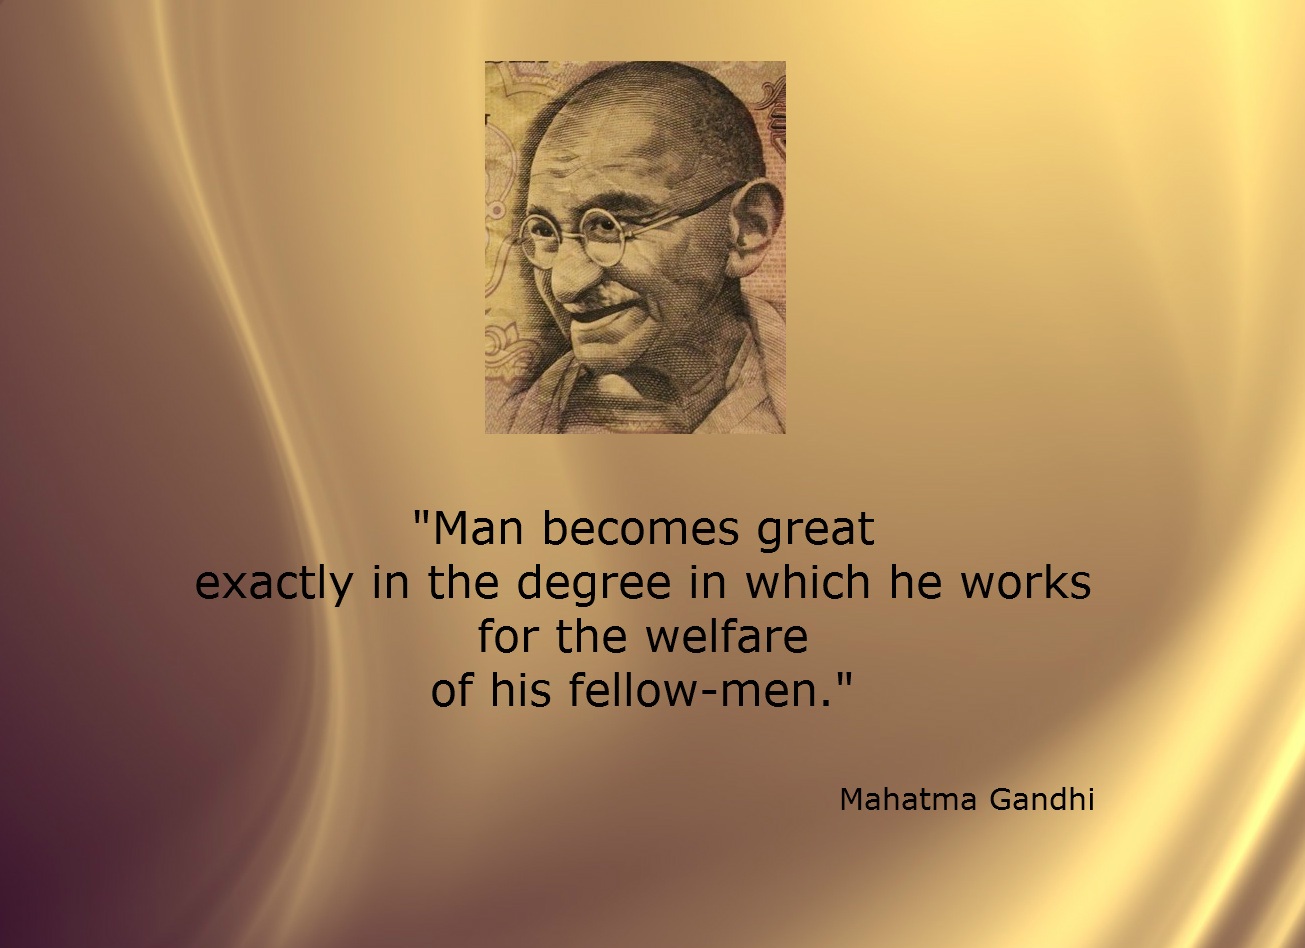 Gandhi fellow-men